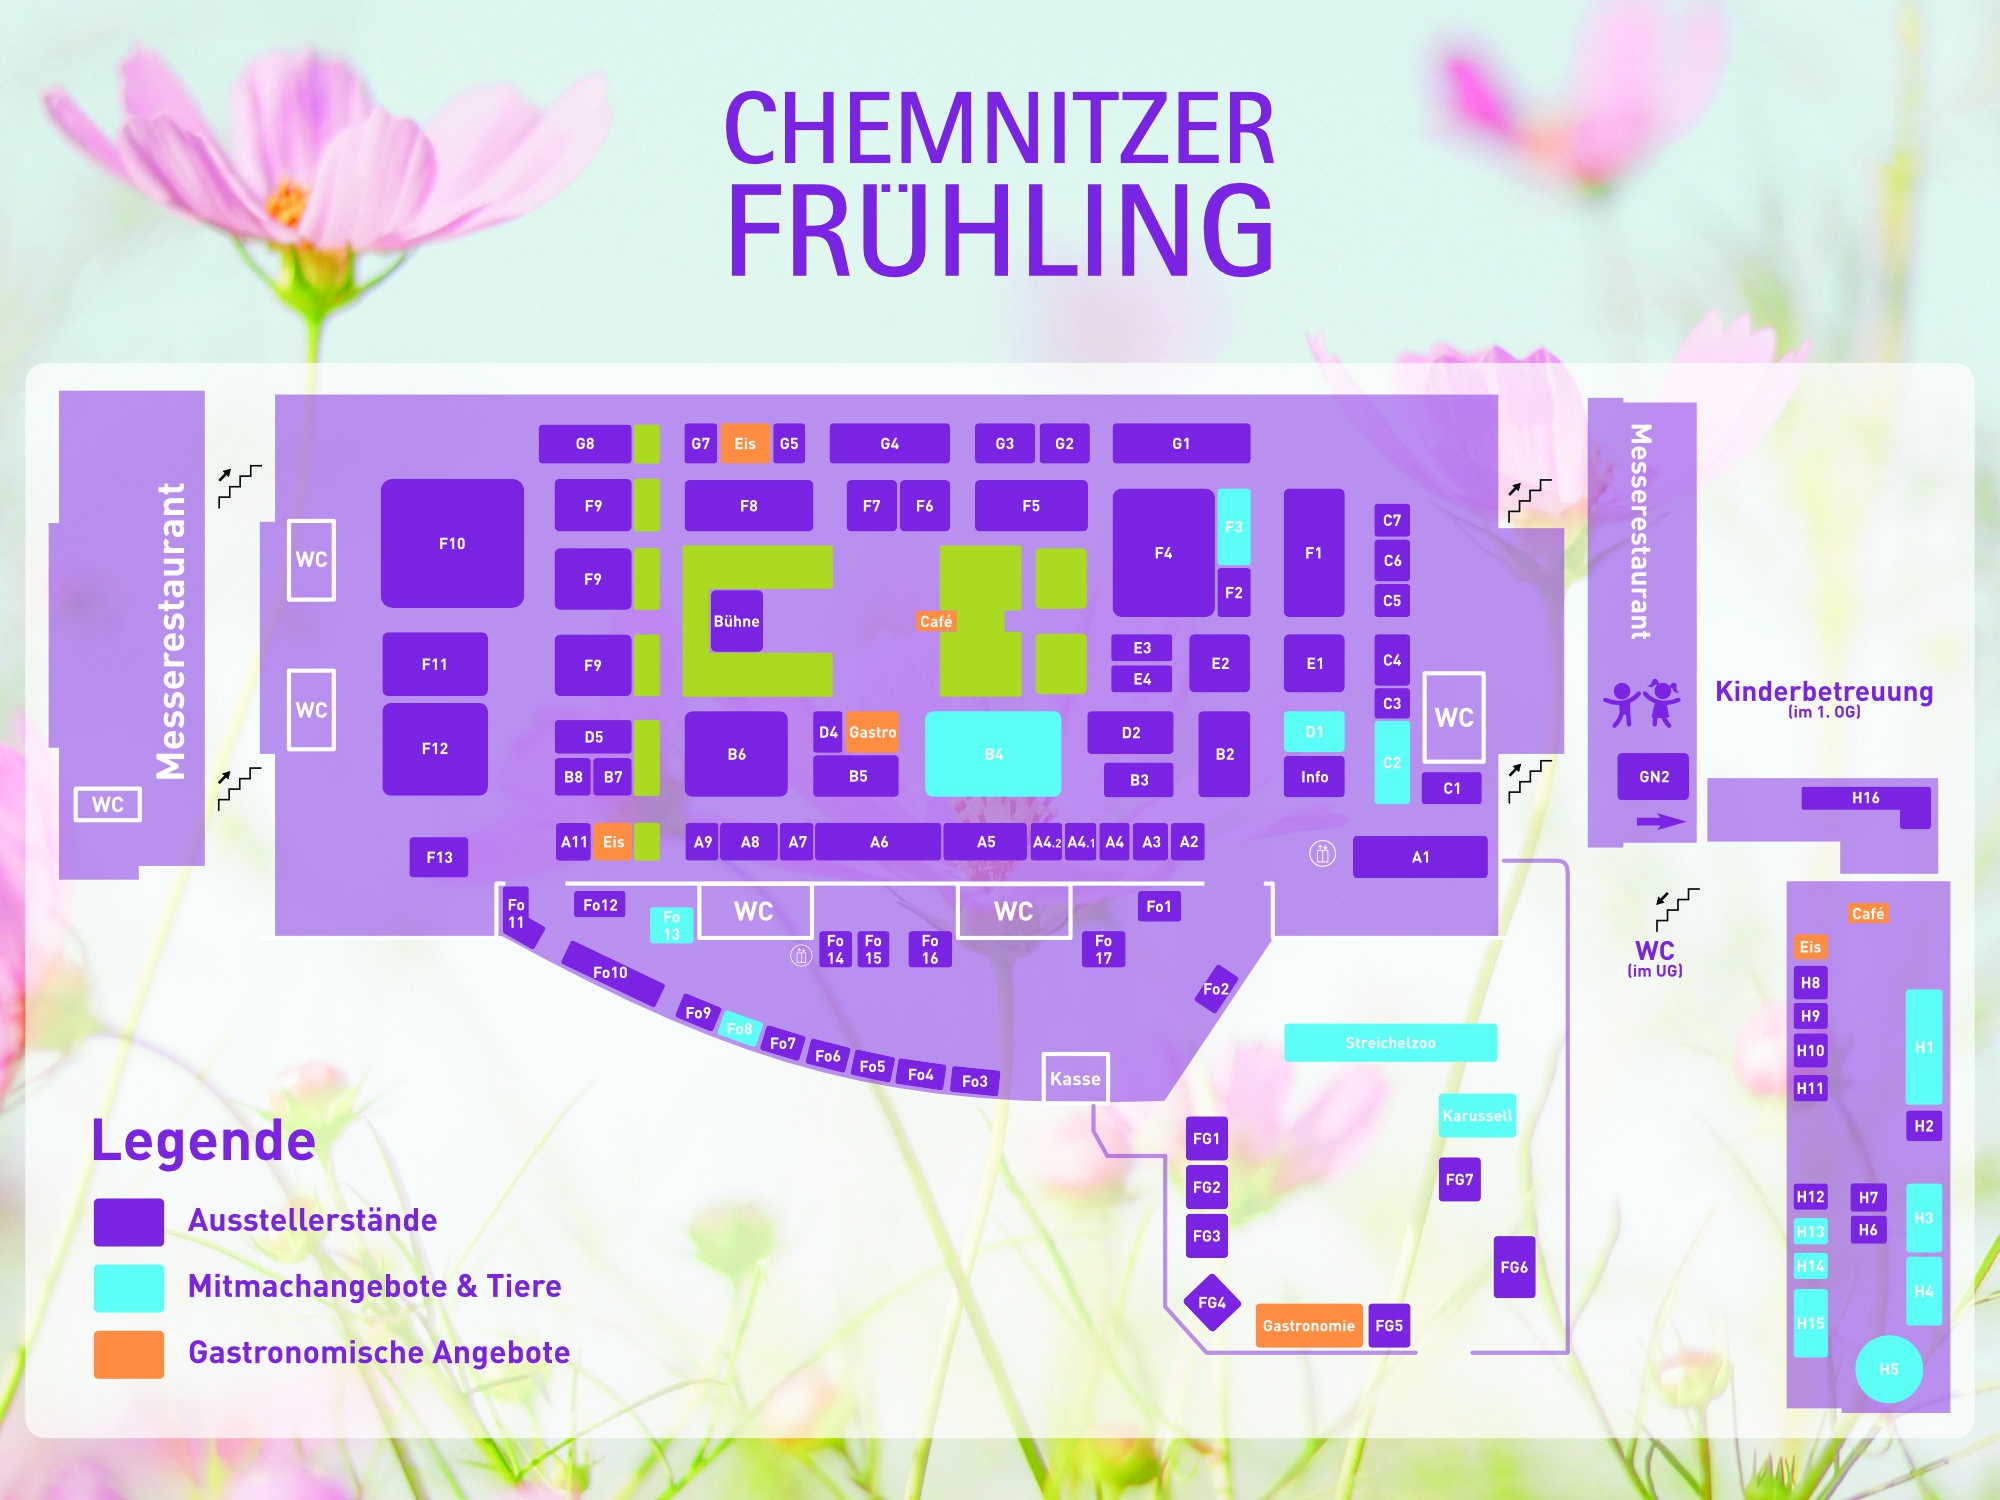 Hallenplan Chemnitzer Frühling